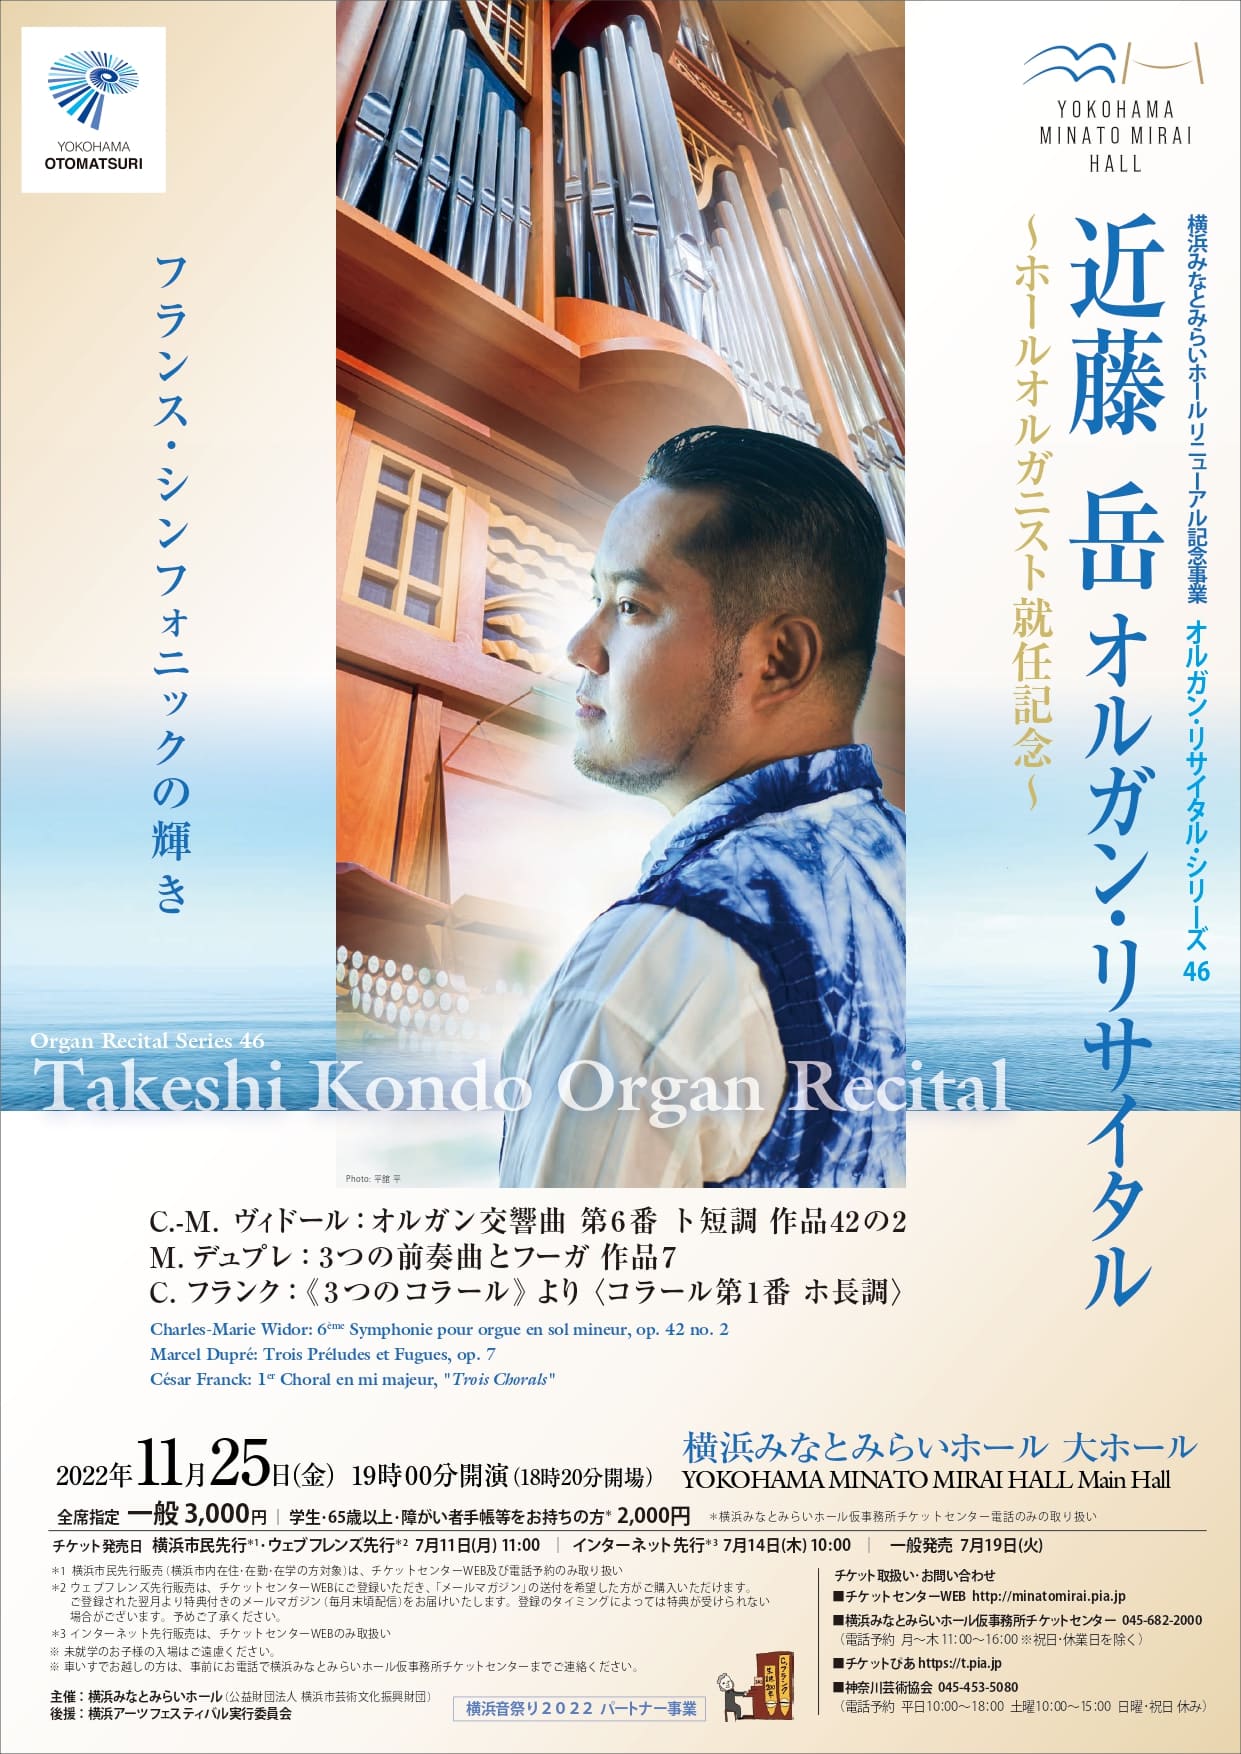 オルガン・リサイタル・シリーズ46「近藤 岳 オルガン・リサイタル」